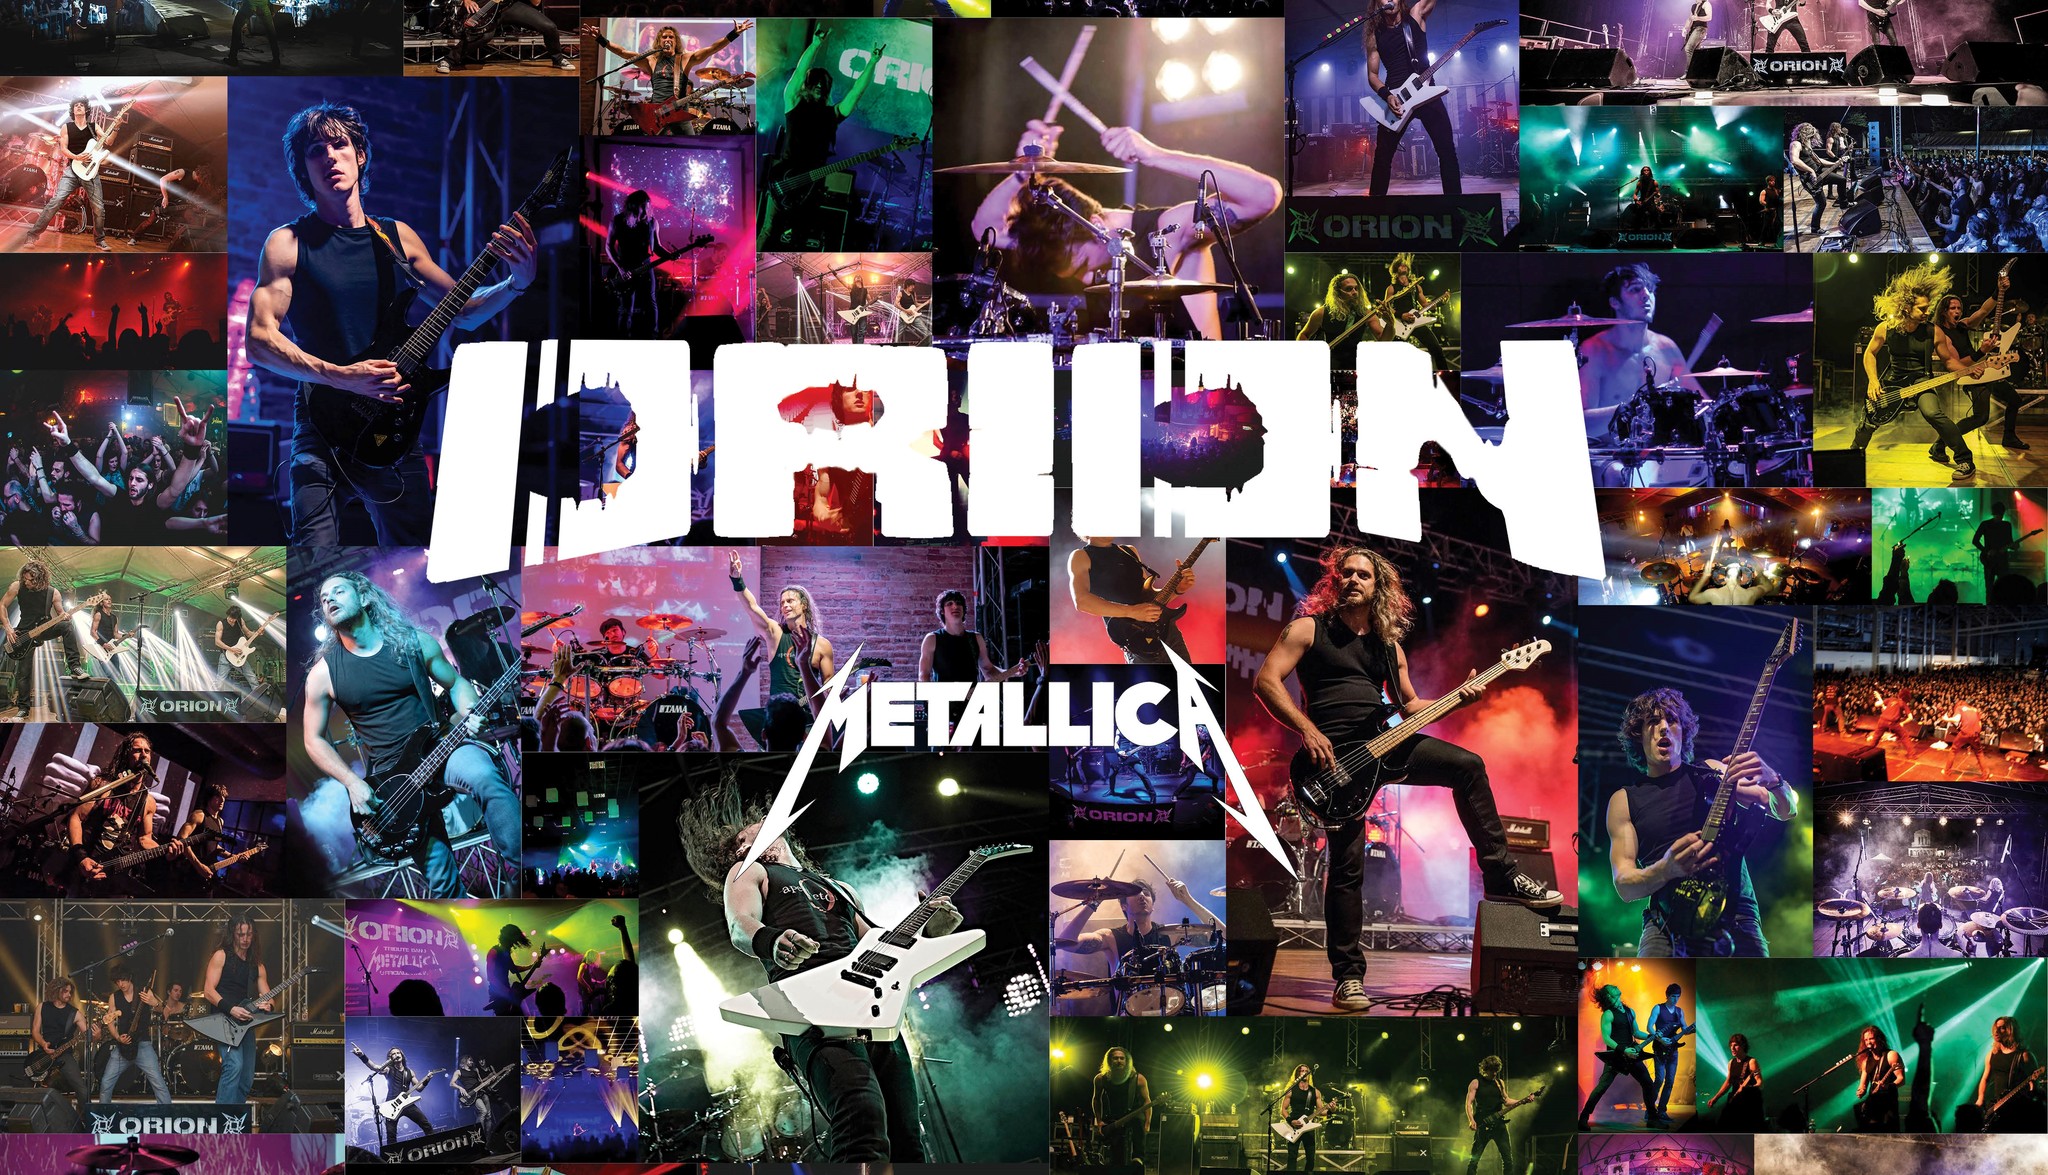 ORION Metallica LIVE, Festeggiamenti Primo Maggio, Campagnola di Gemona